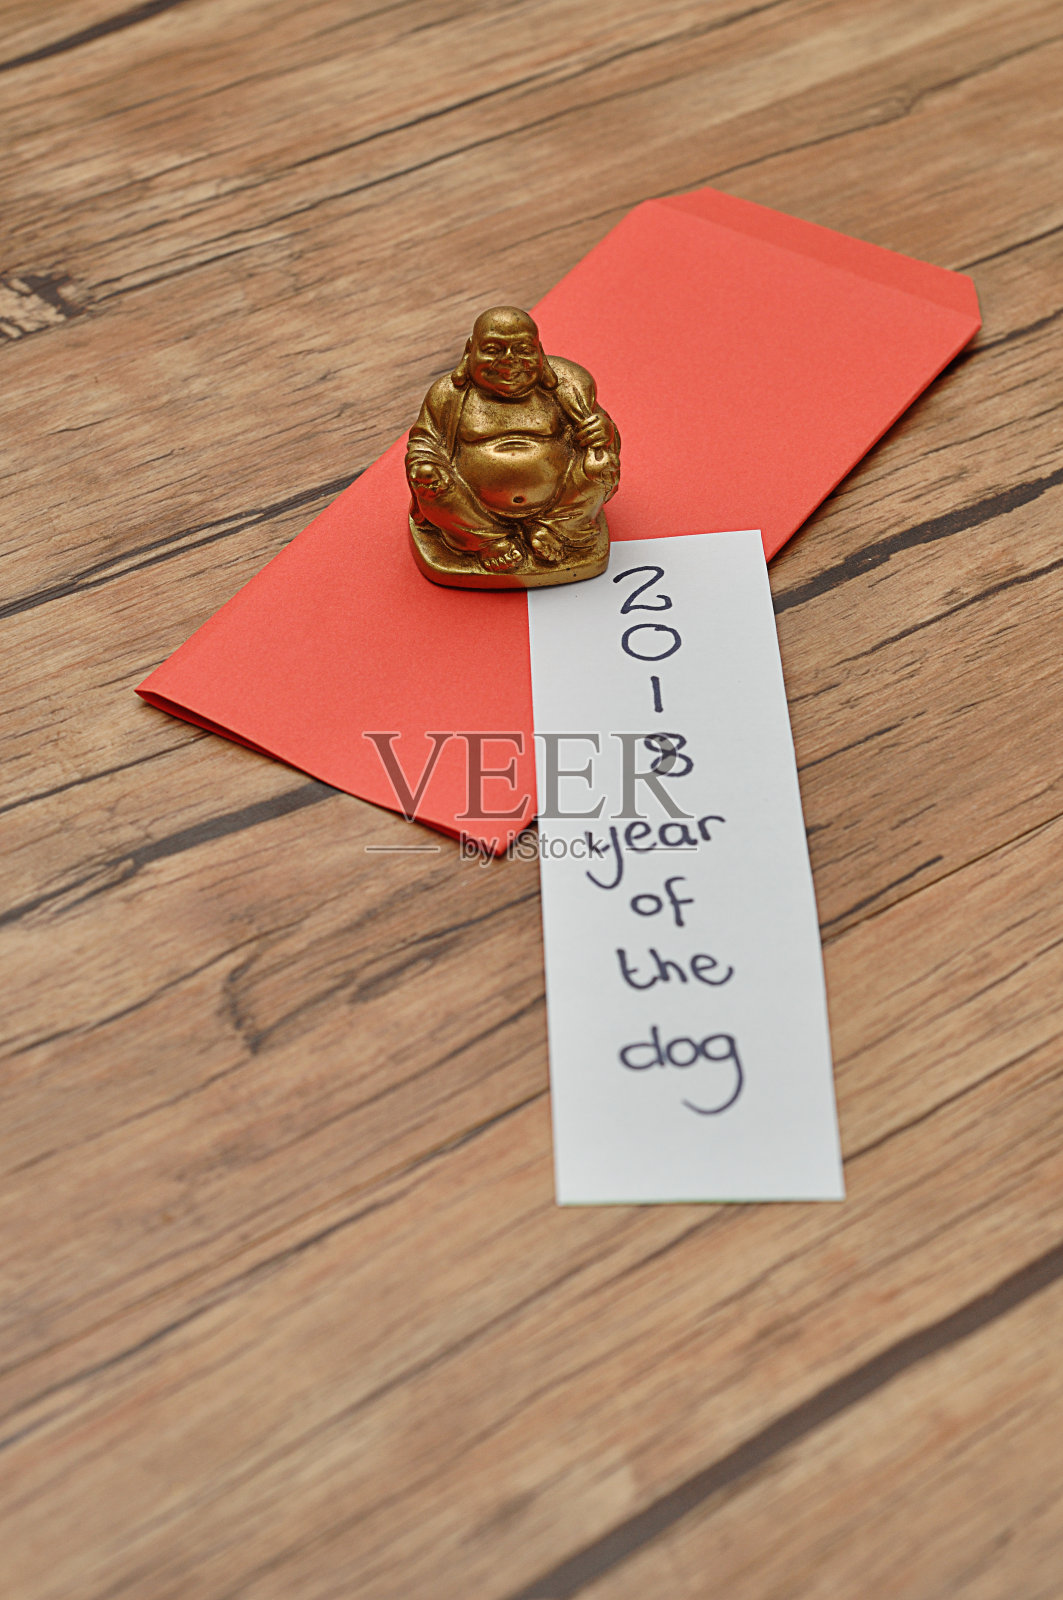 中国新年设计。一个春节的红包和一张2018狗年的纸条照片摄影图片